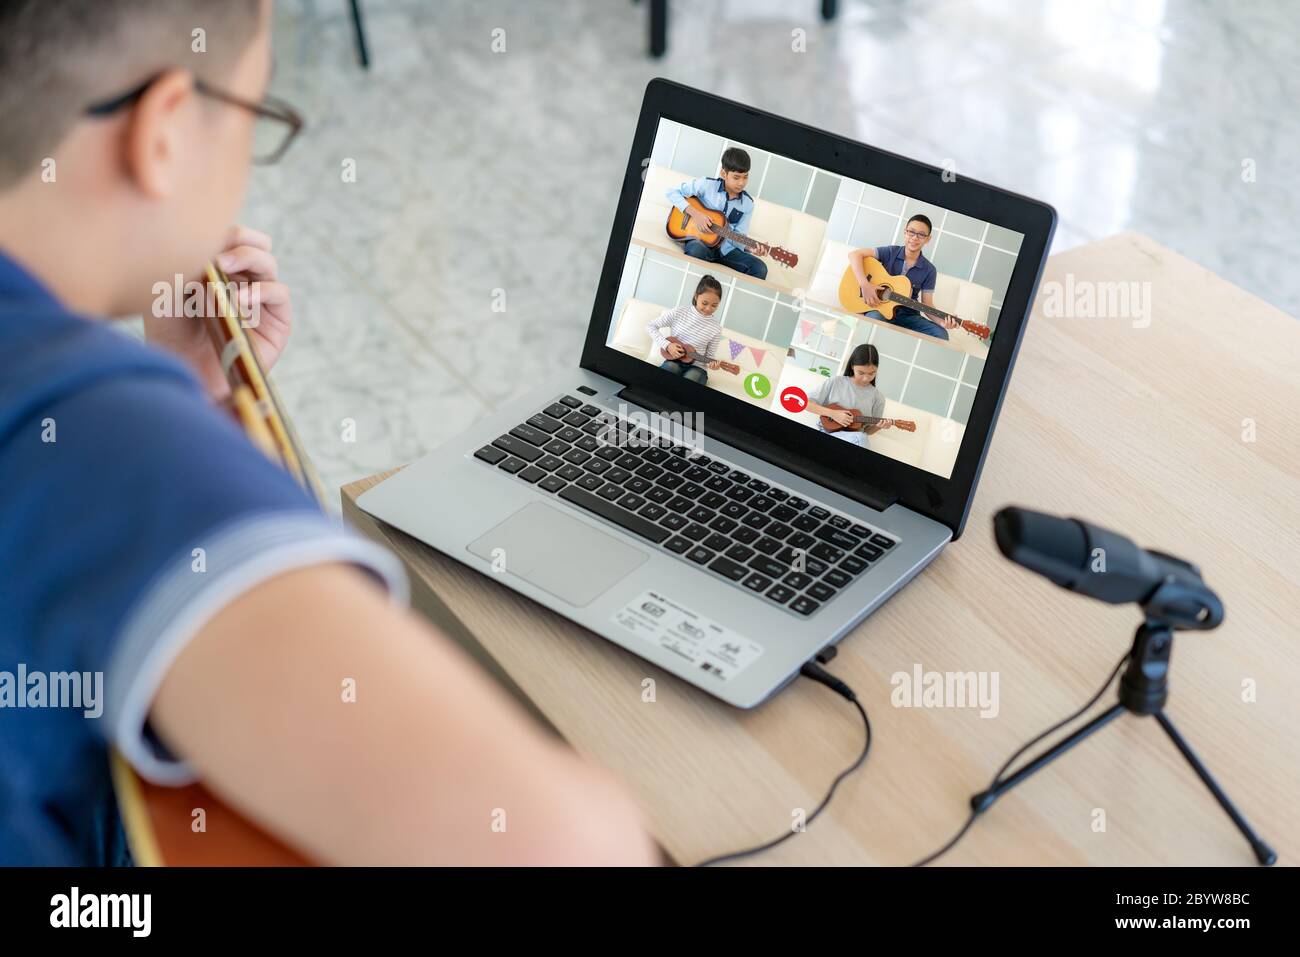 Asiatique garçon jouant de la guitare acoustique Virtual happy hour réunion pour jouer de la musique en ligne avec un ami en vidéo conférence avec ordinateur portable pour un m en ligne Banque D'Images